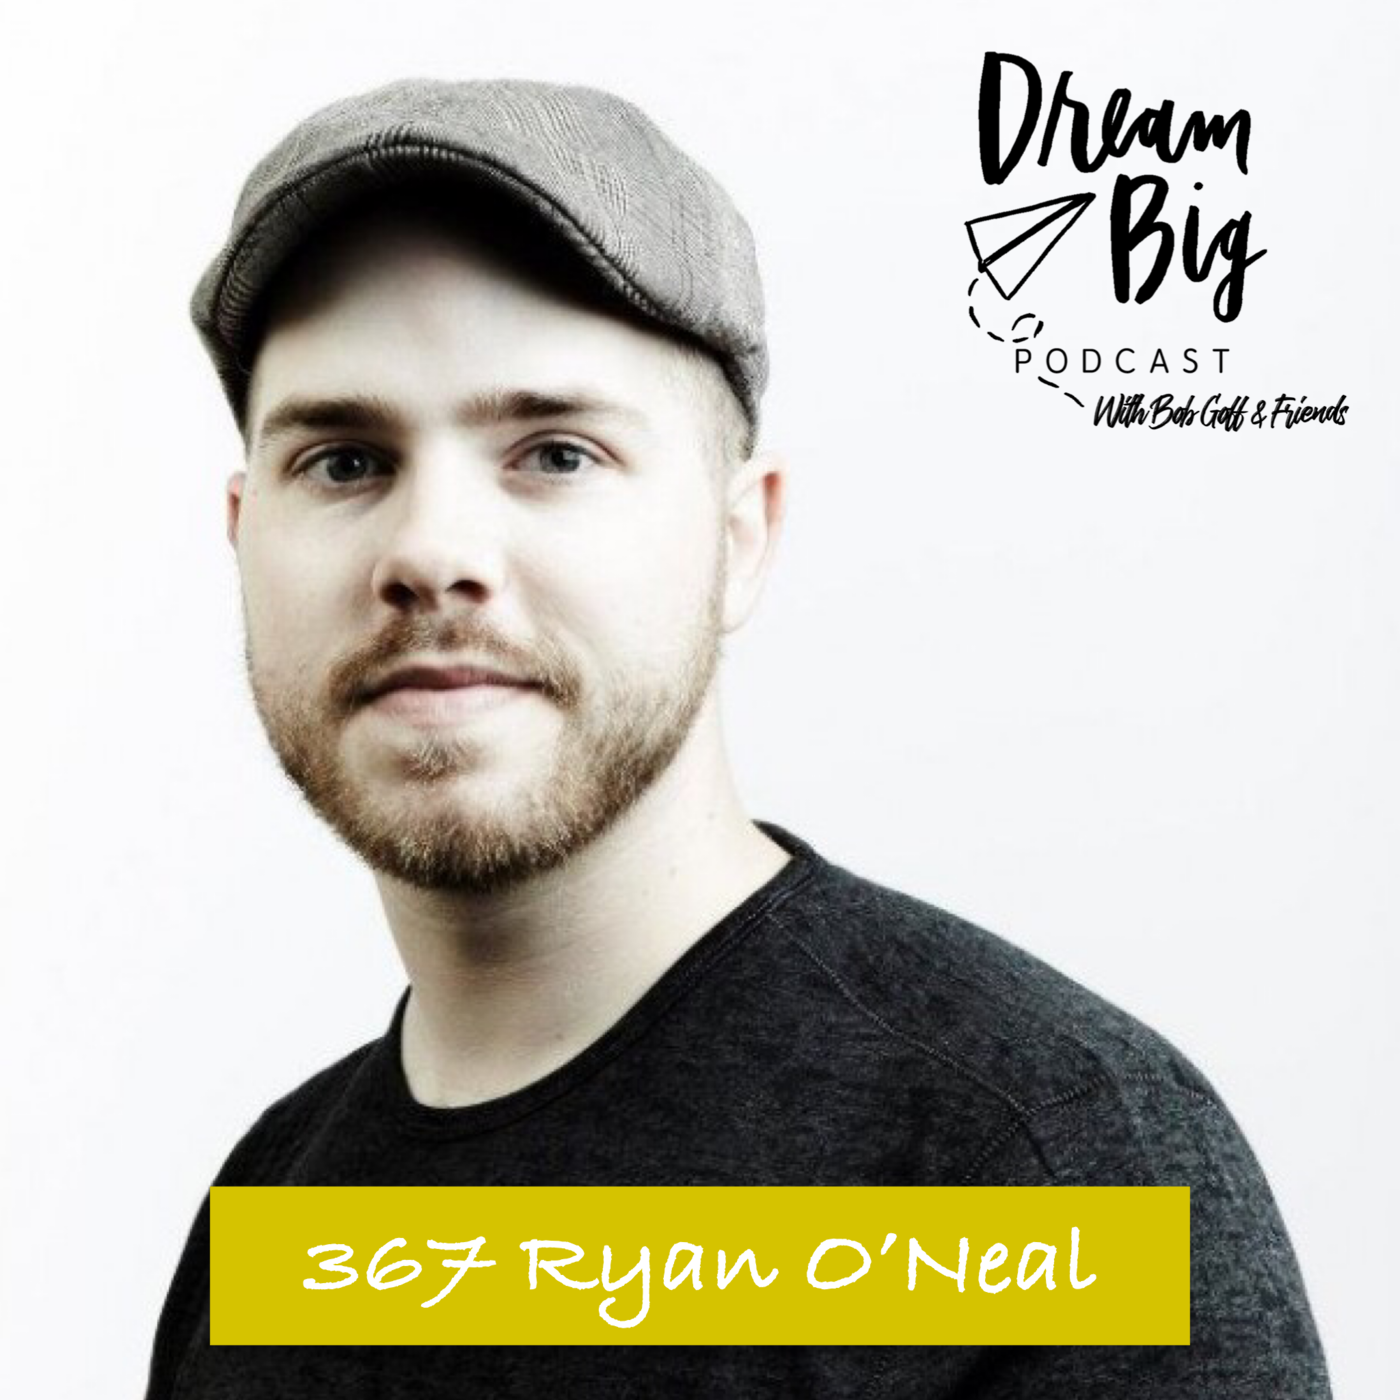 Ryan O'Neal